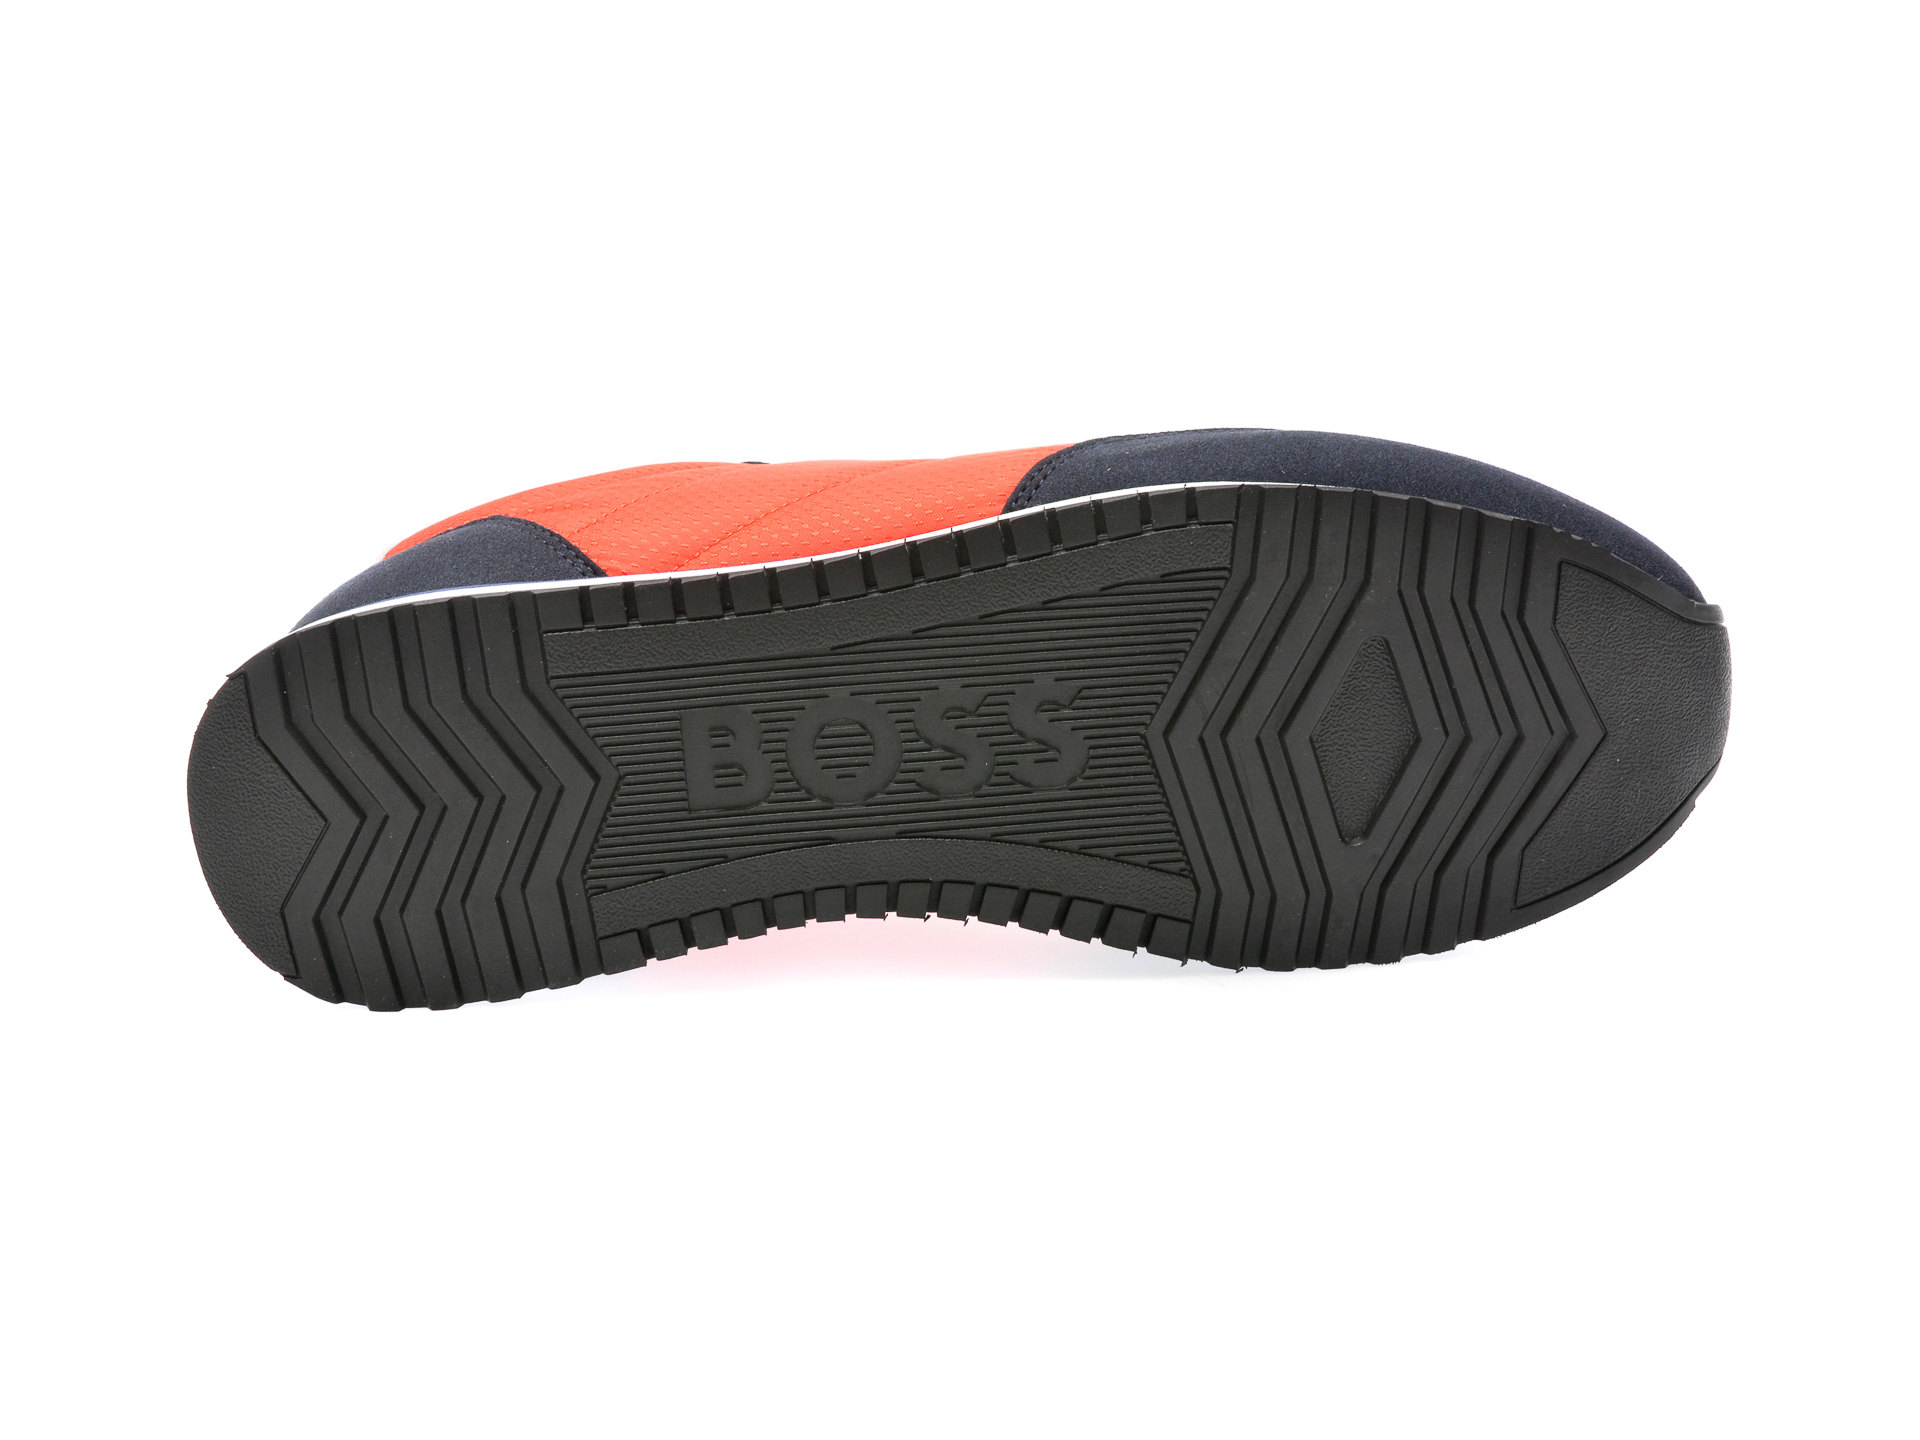 Pantofi BOSS rosii, 3715, din material textil